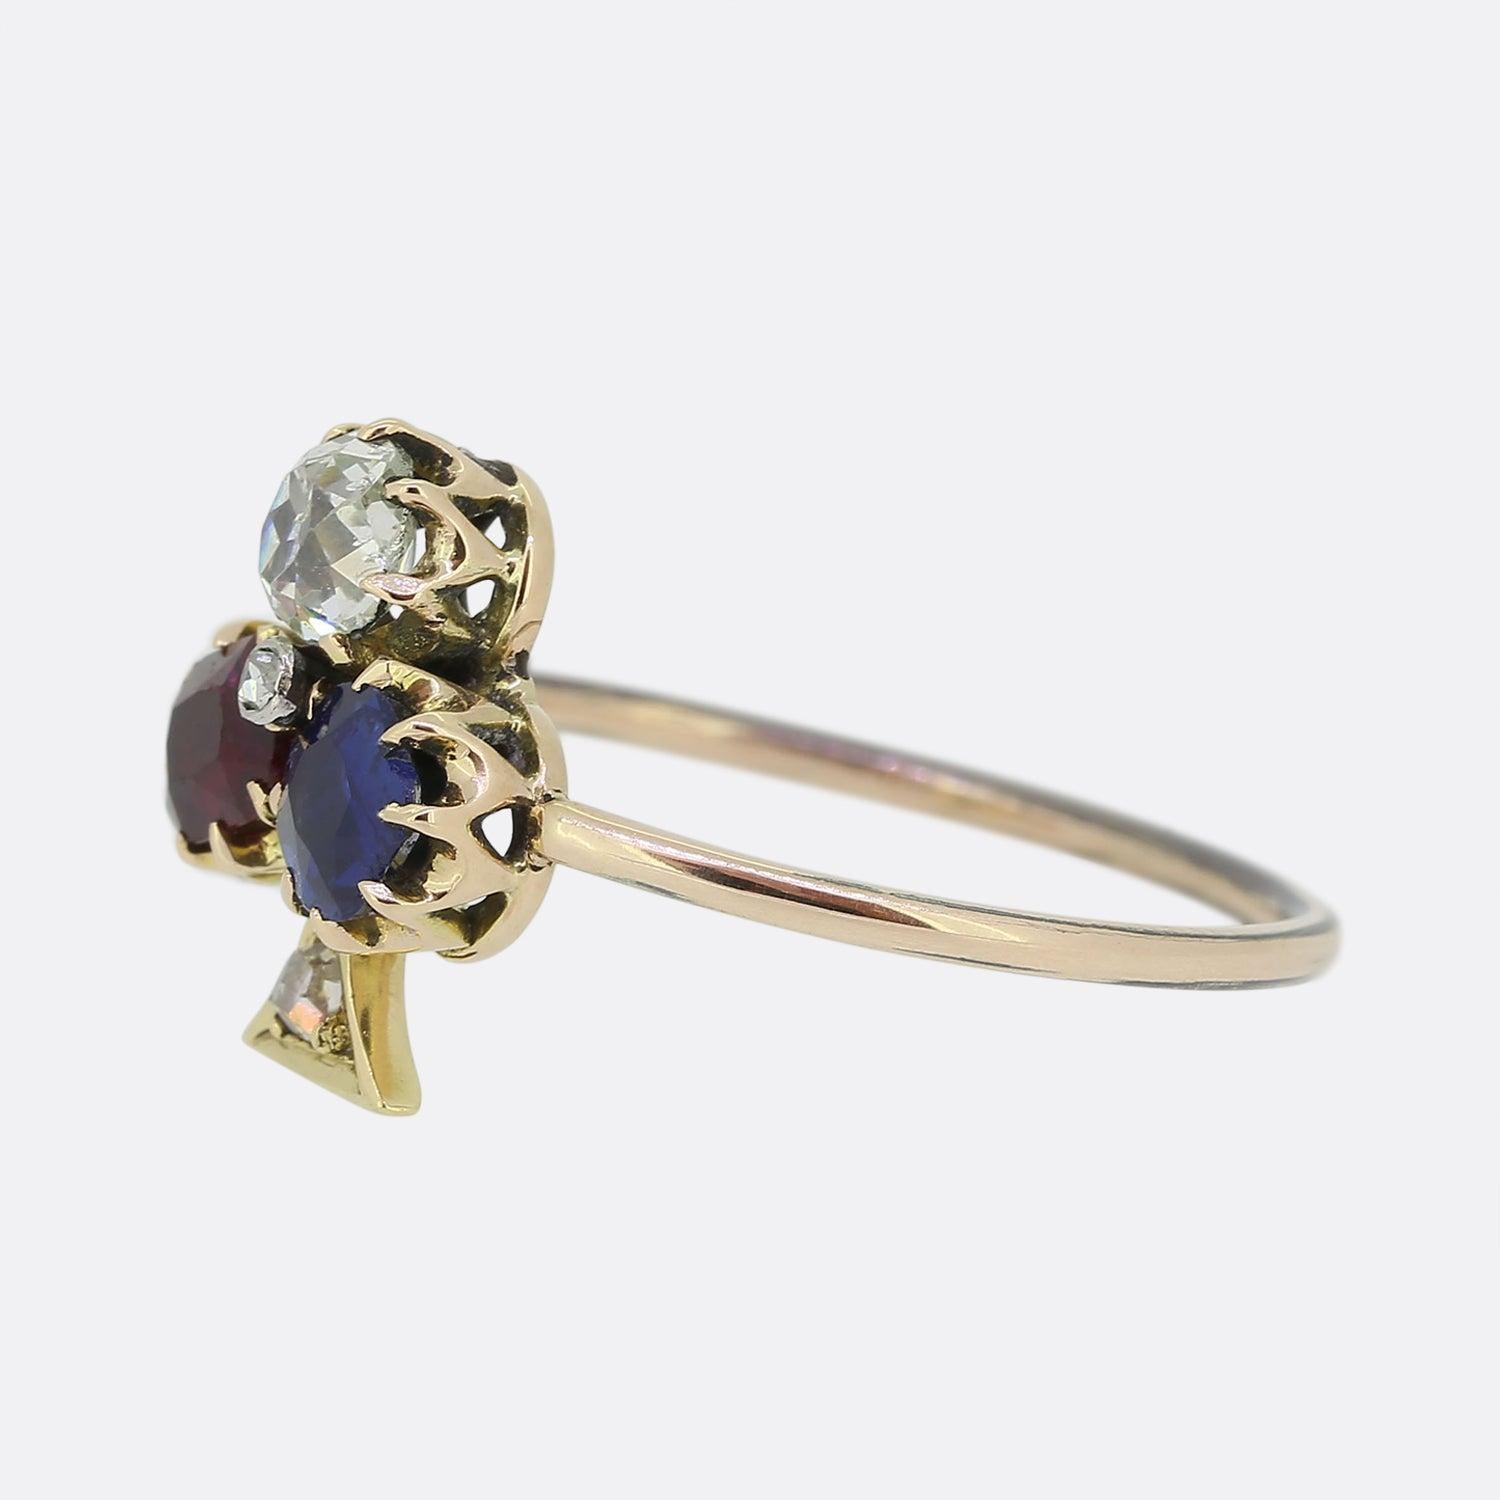 Hier haben wir einen charmanten viktorianischen Kleeblattring. Der Ring ist mit einem Trio runder Edelsteine besetzt, darunter ein Rubin, ein Saphir und ein Diamant im Altschliff, die zusammen das Kleeblattmotiv bilden.  Abgerundet wird dieses